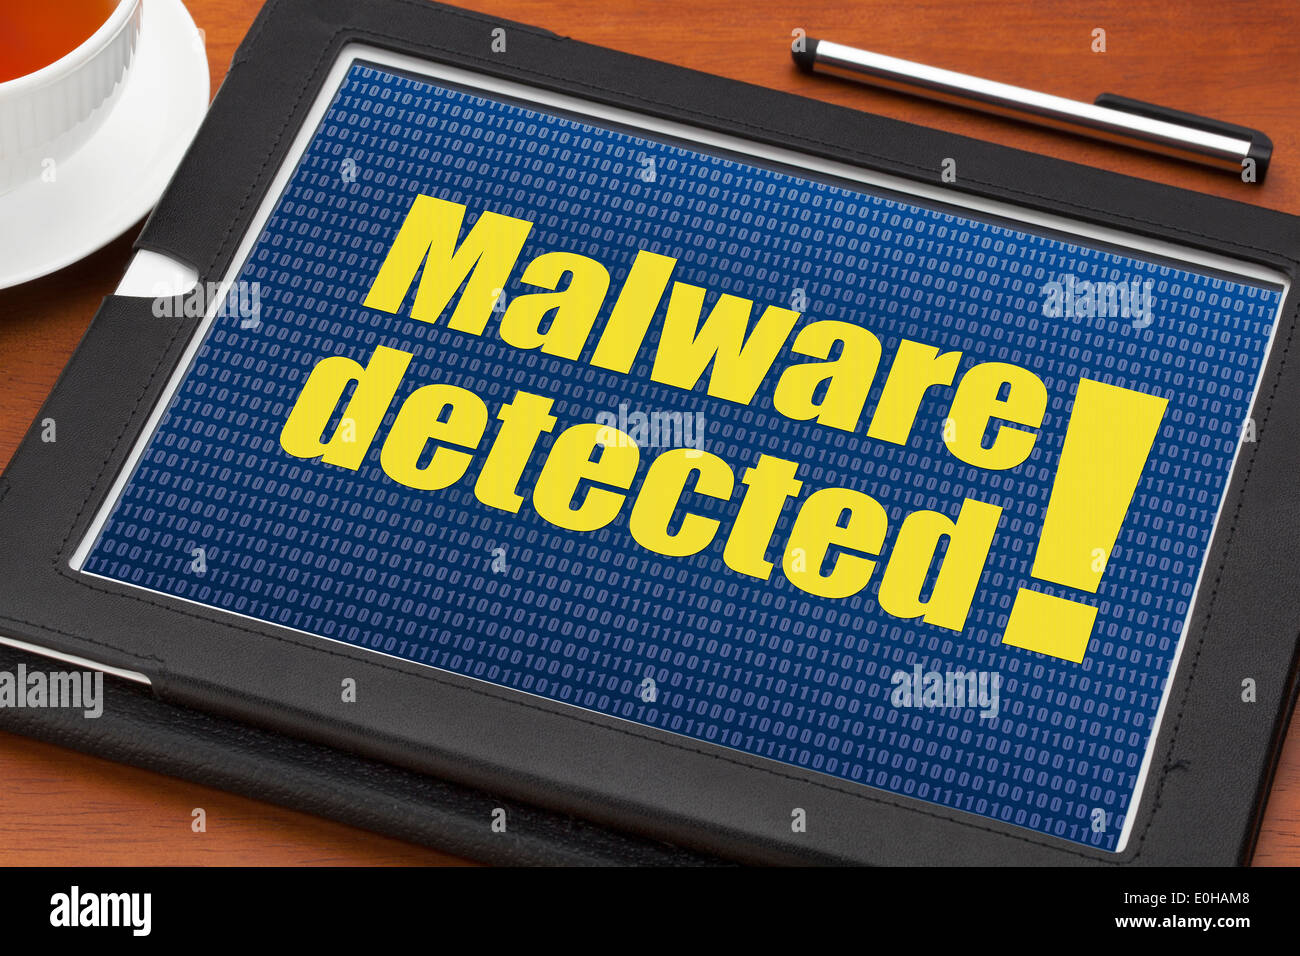 Rilevato malware alert su una tavoletta digitale con una tazza di tè Foto Stock